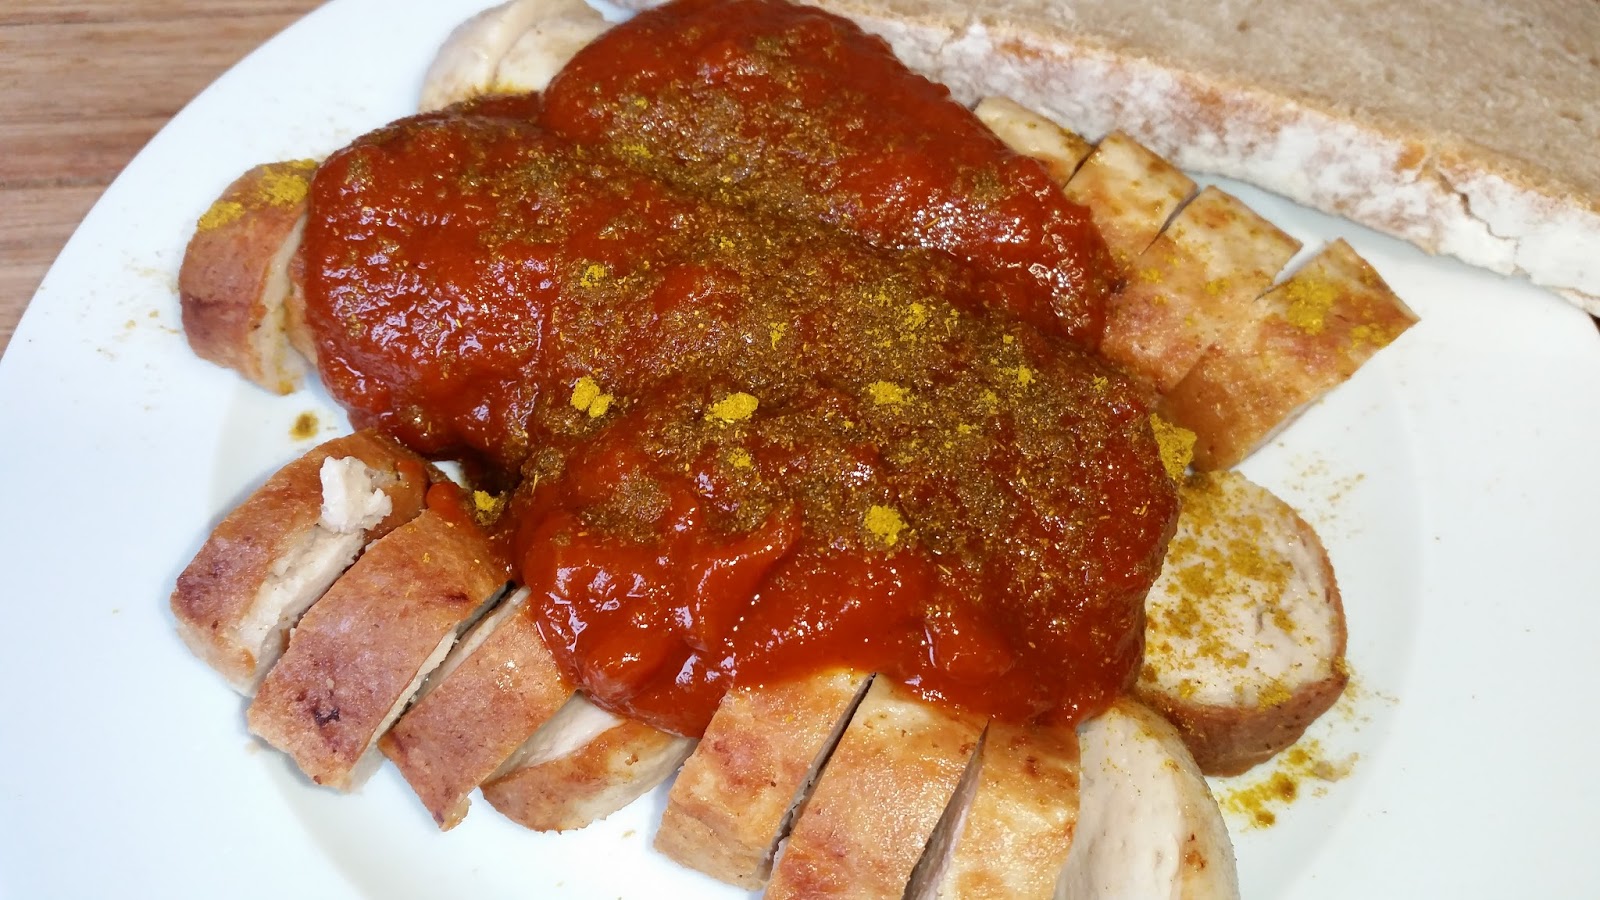 Maxismutti - Martinas Kitchenchaos: Currywurst-Soße zur Currywurst ...